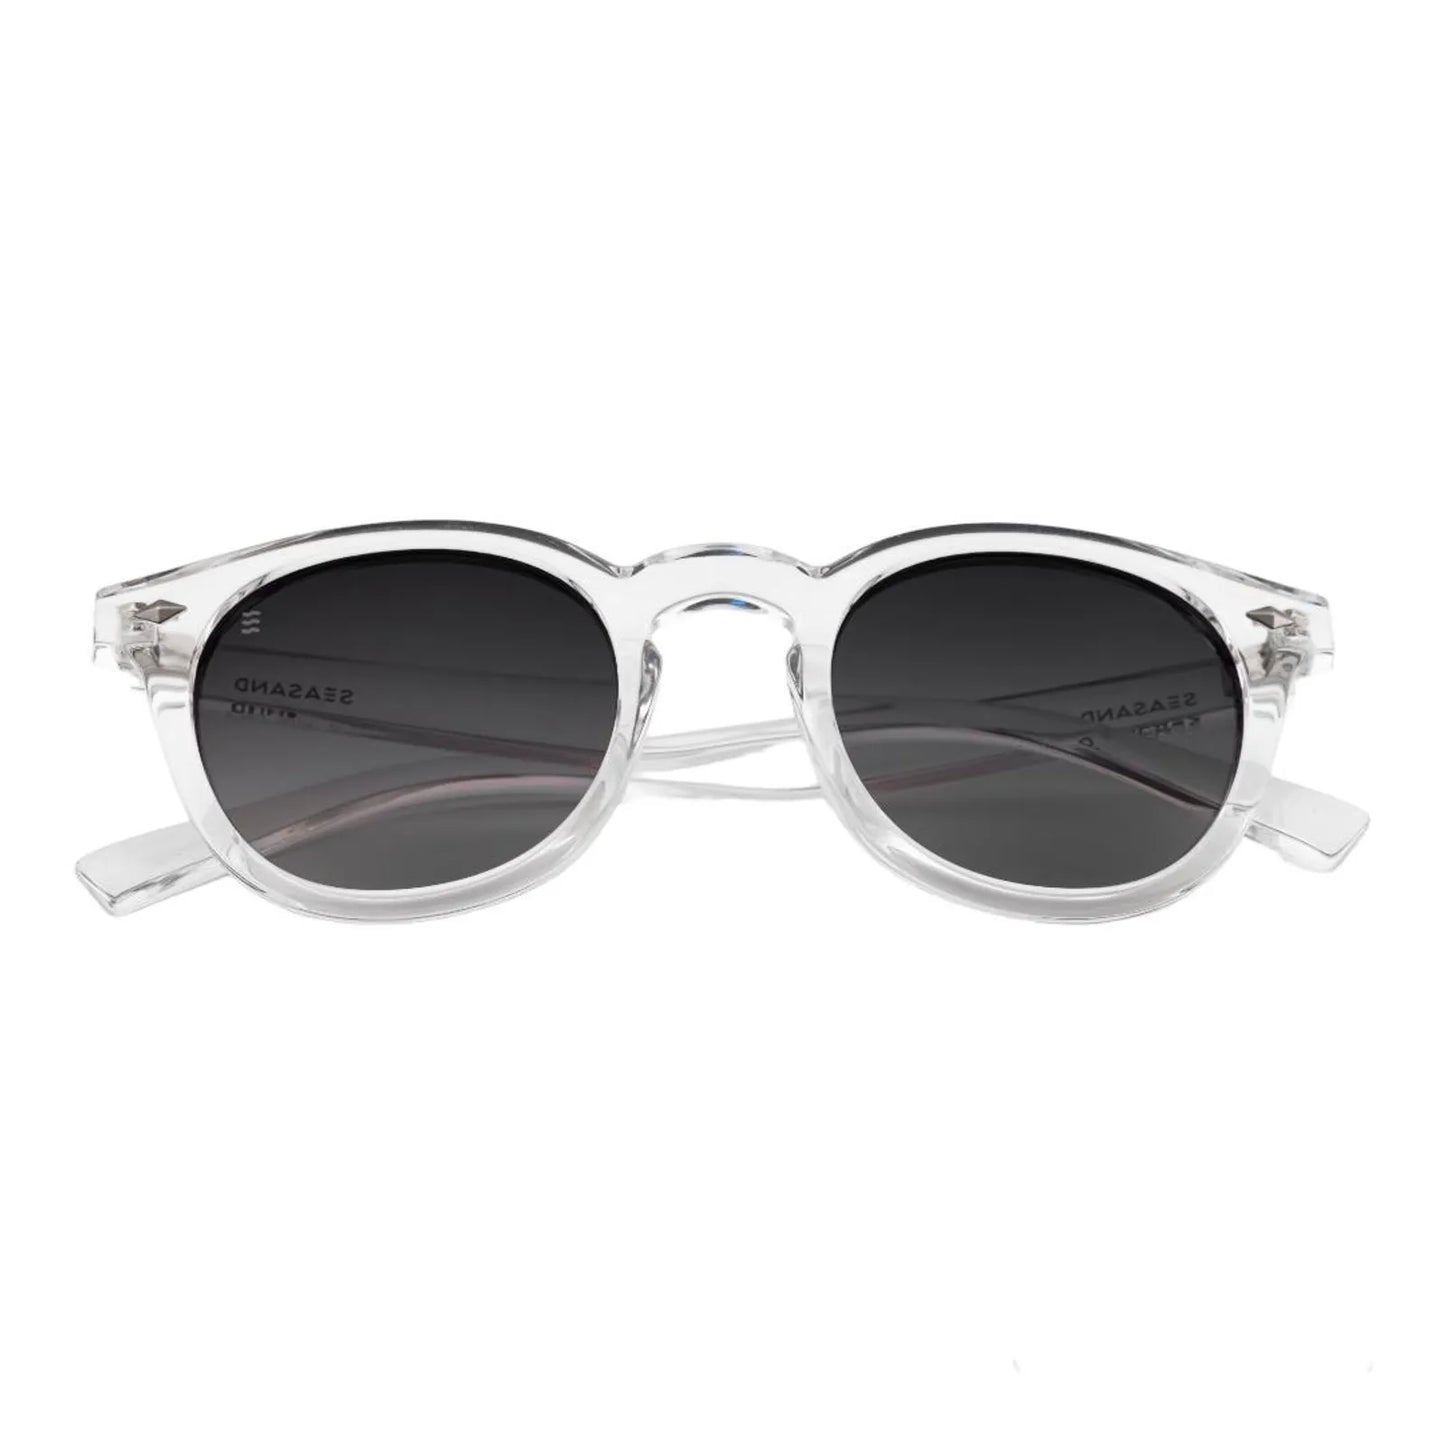 Crystal Clear - Polarized Sunglasses